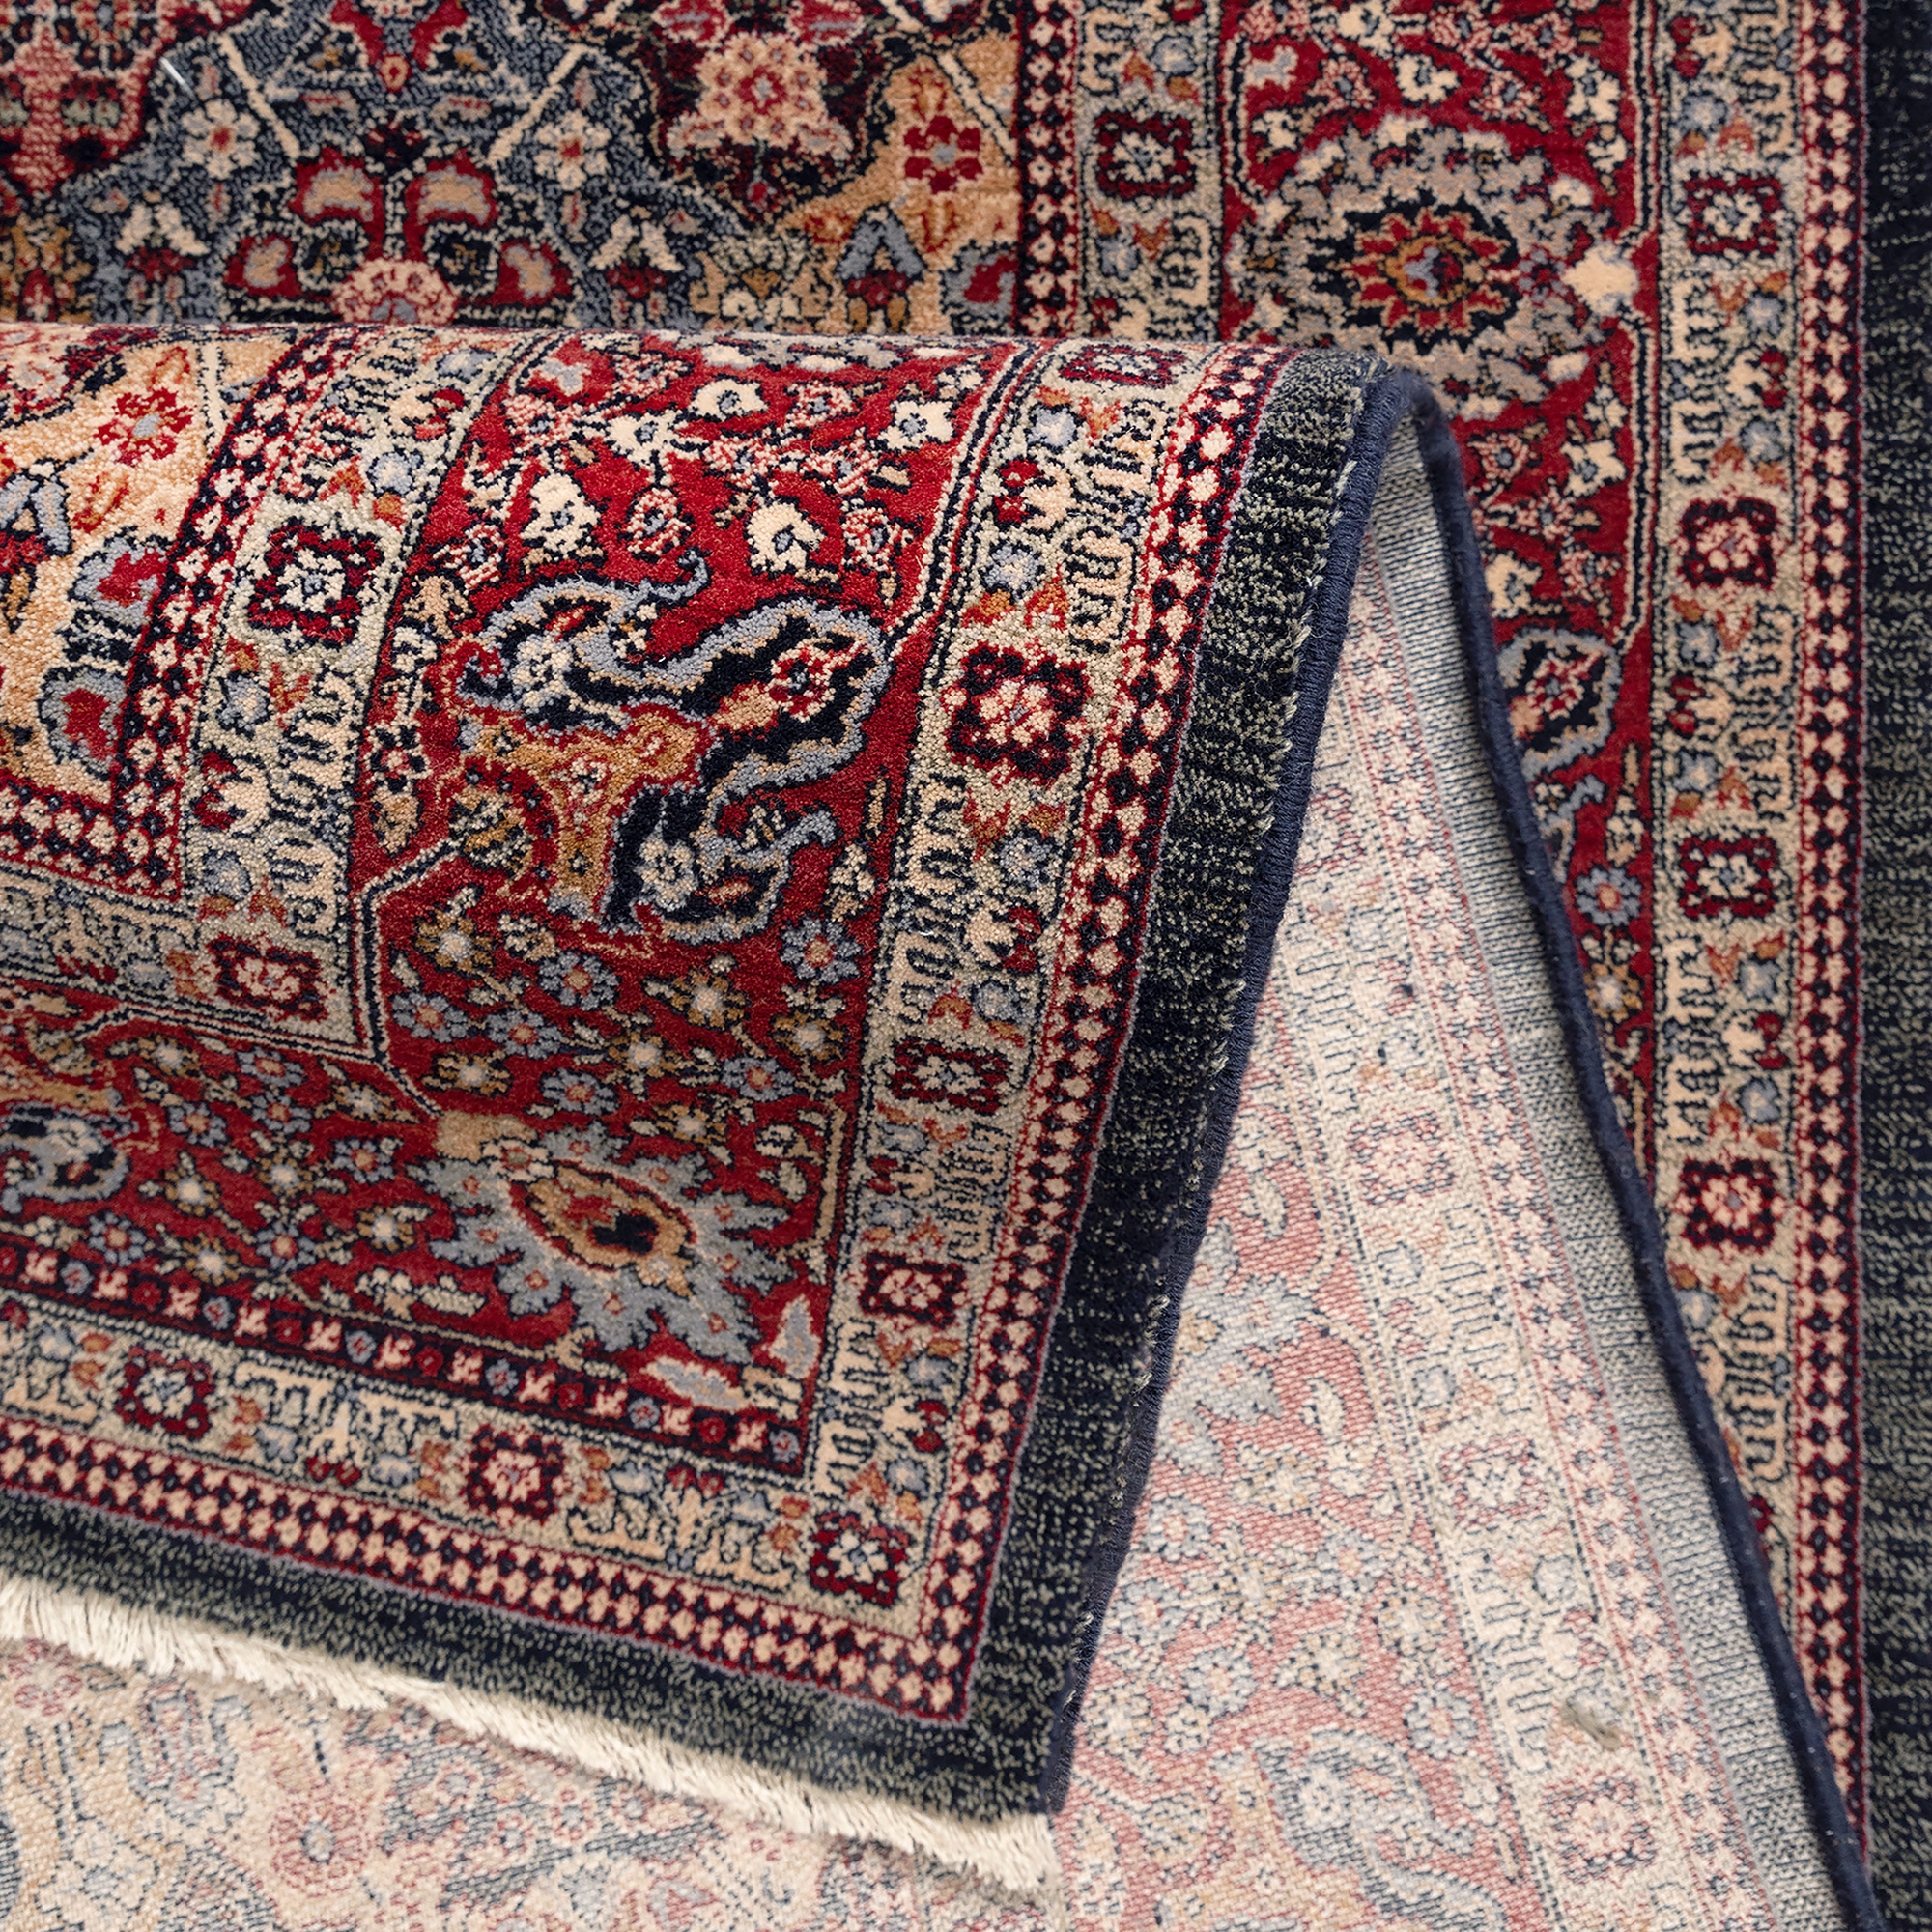 Covor living / dormitor Carpeta Antique 75761-53511, 80 x 145 cm, lana, maro + rosu + bej + albastru, dreptunghiular